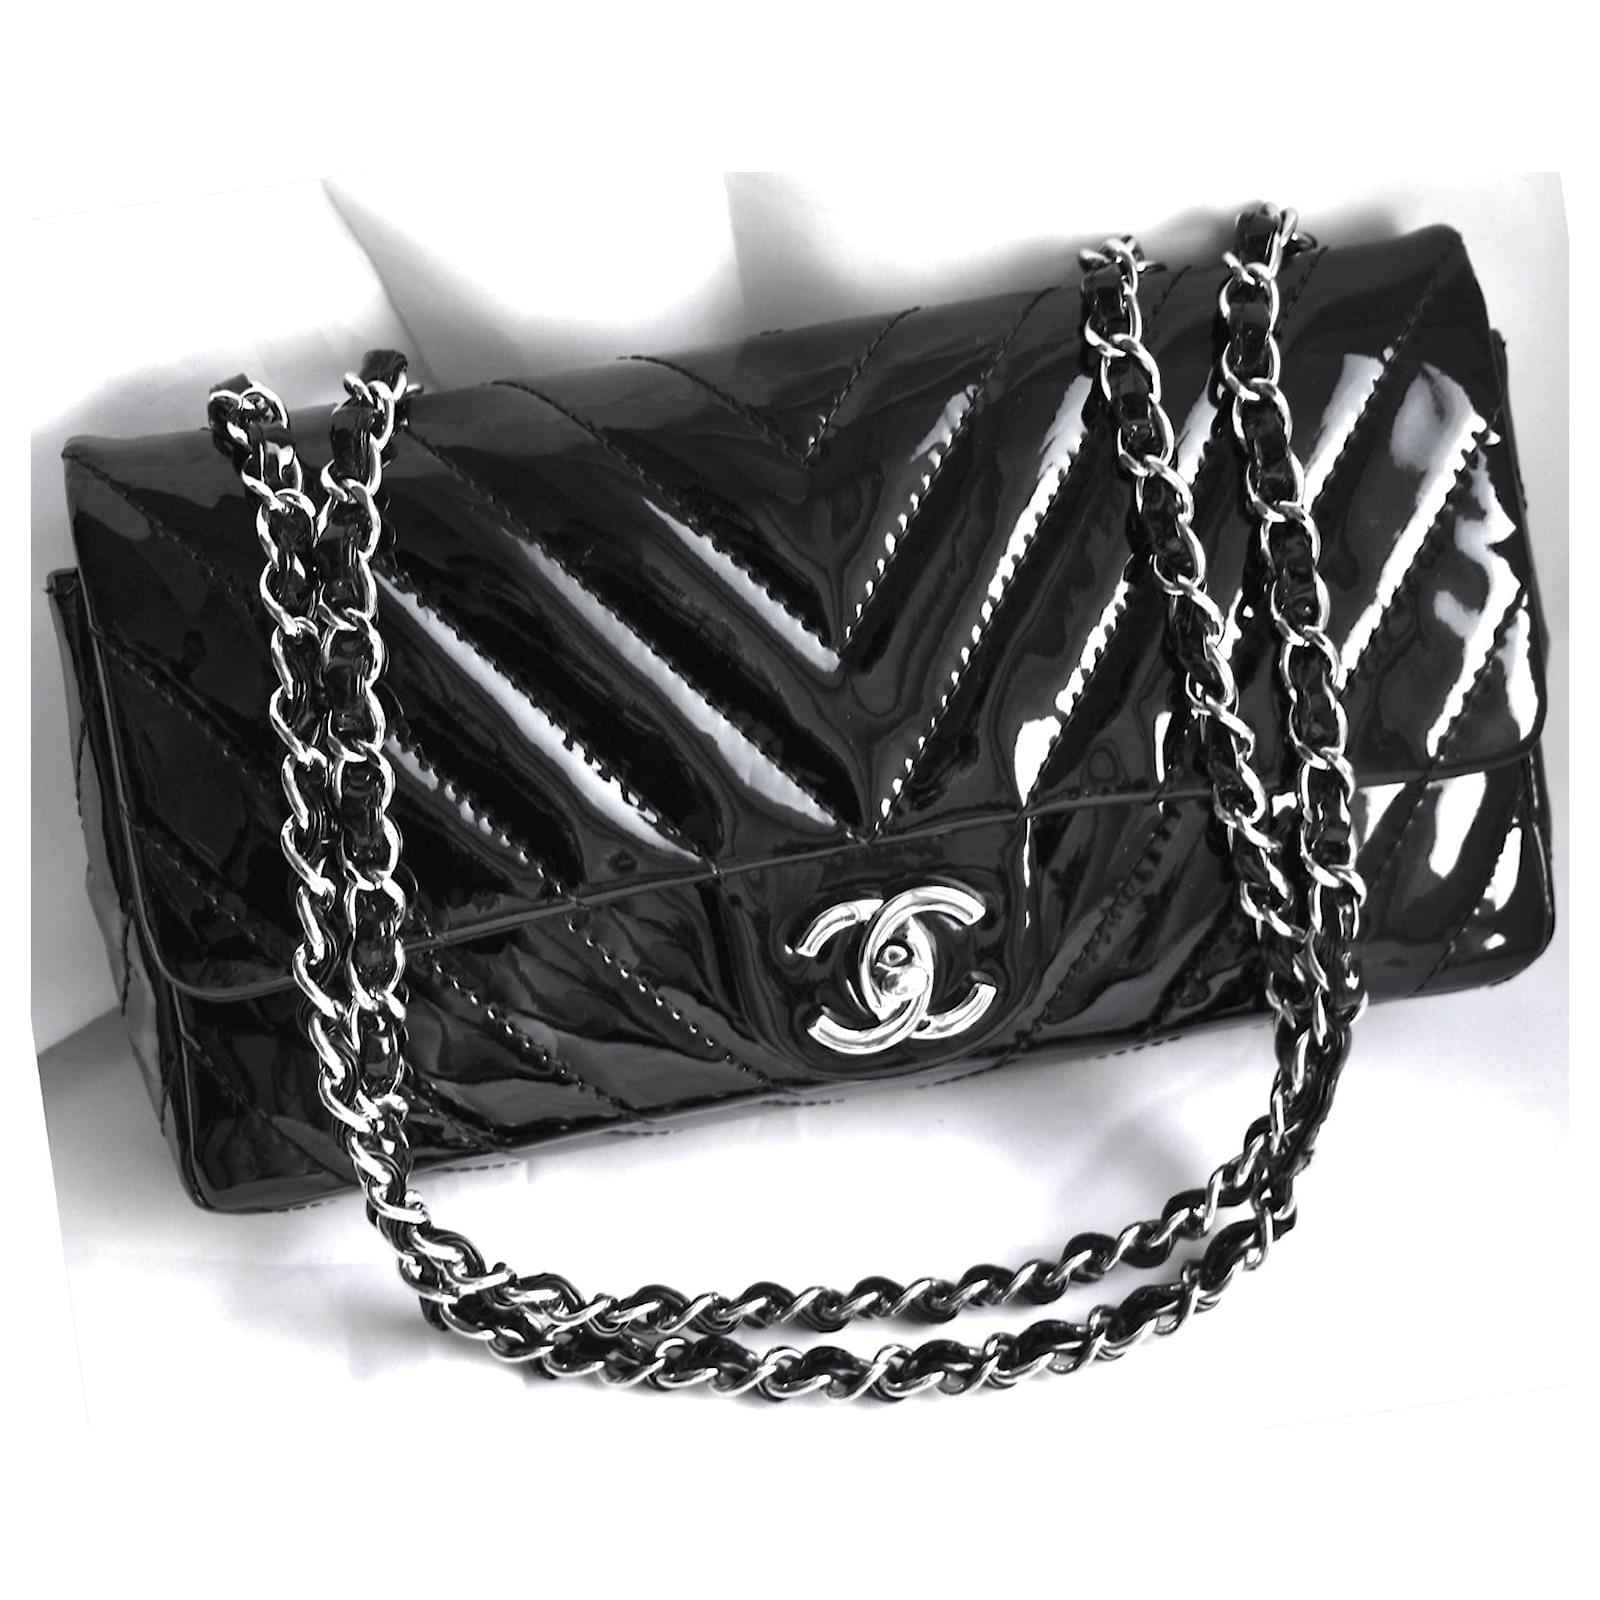 Chanel black Timeless 25 bag - 1996 second hand vintage